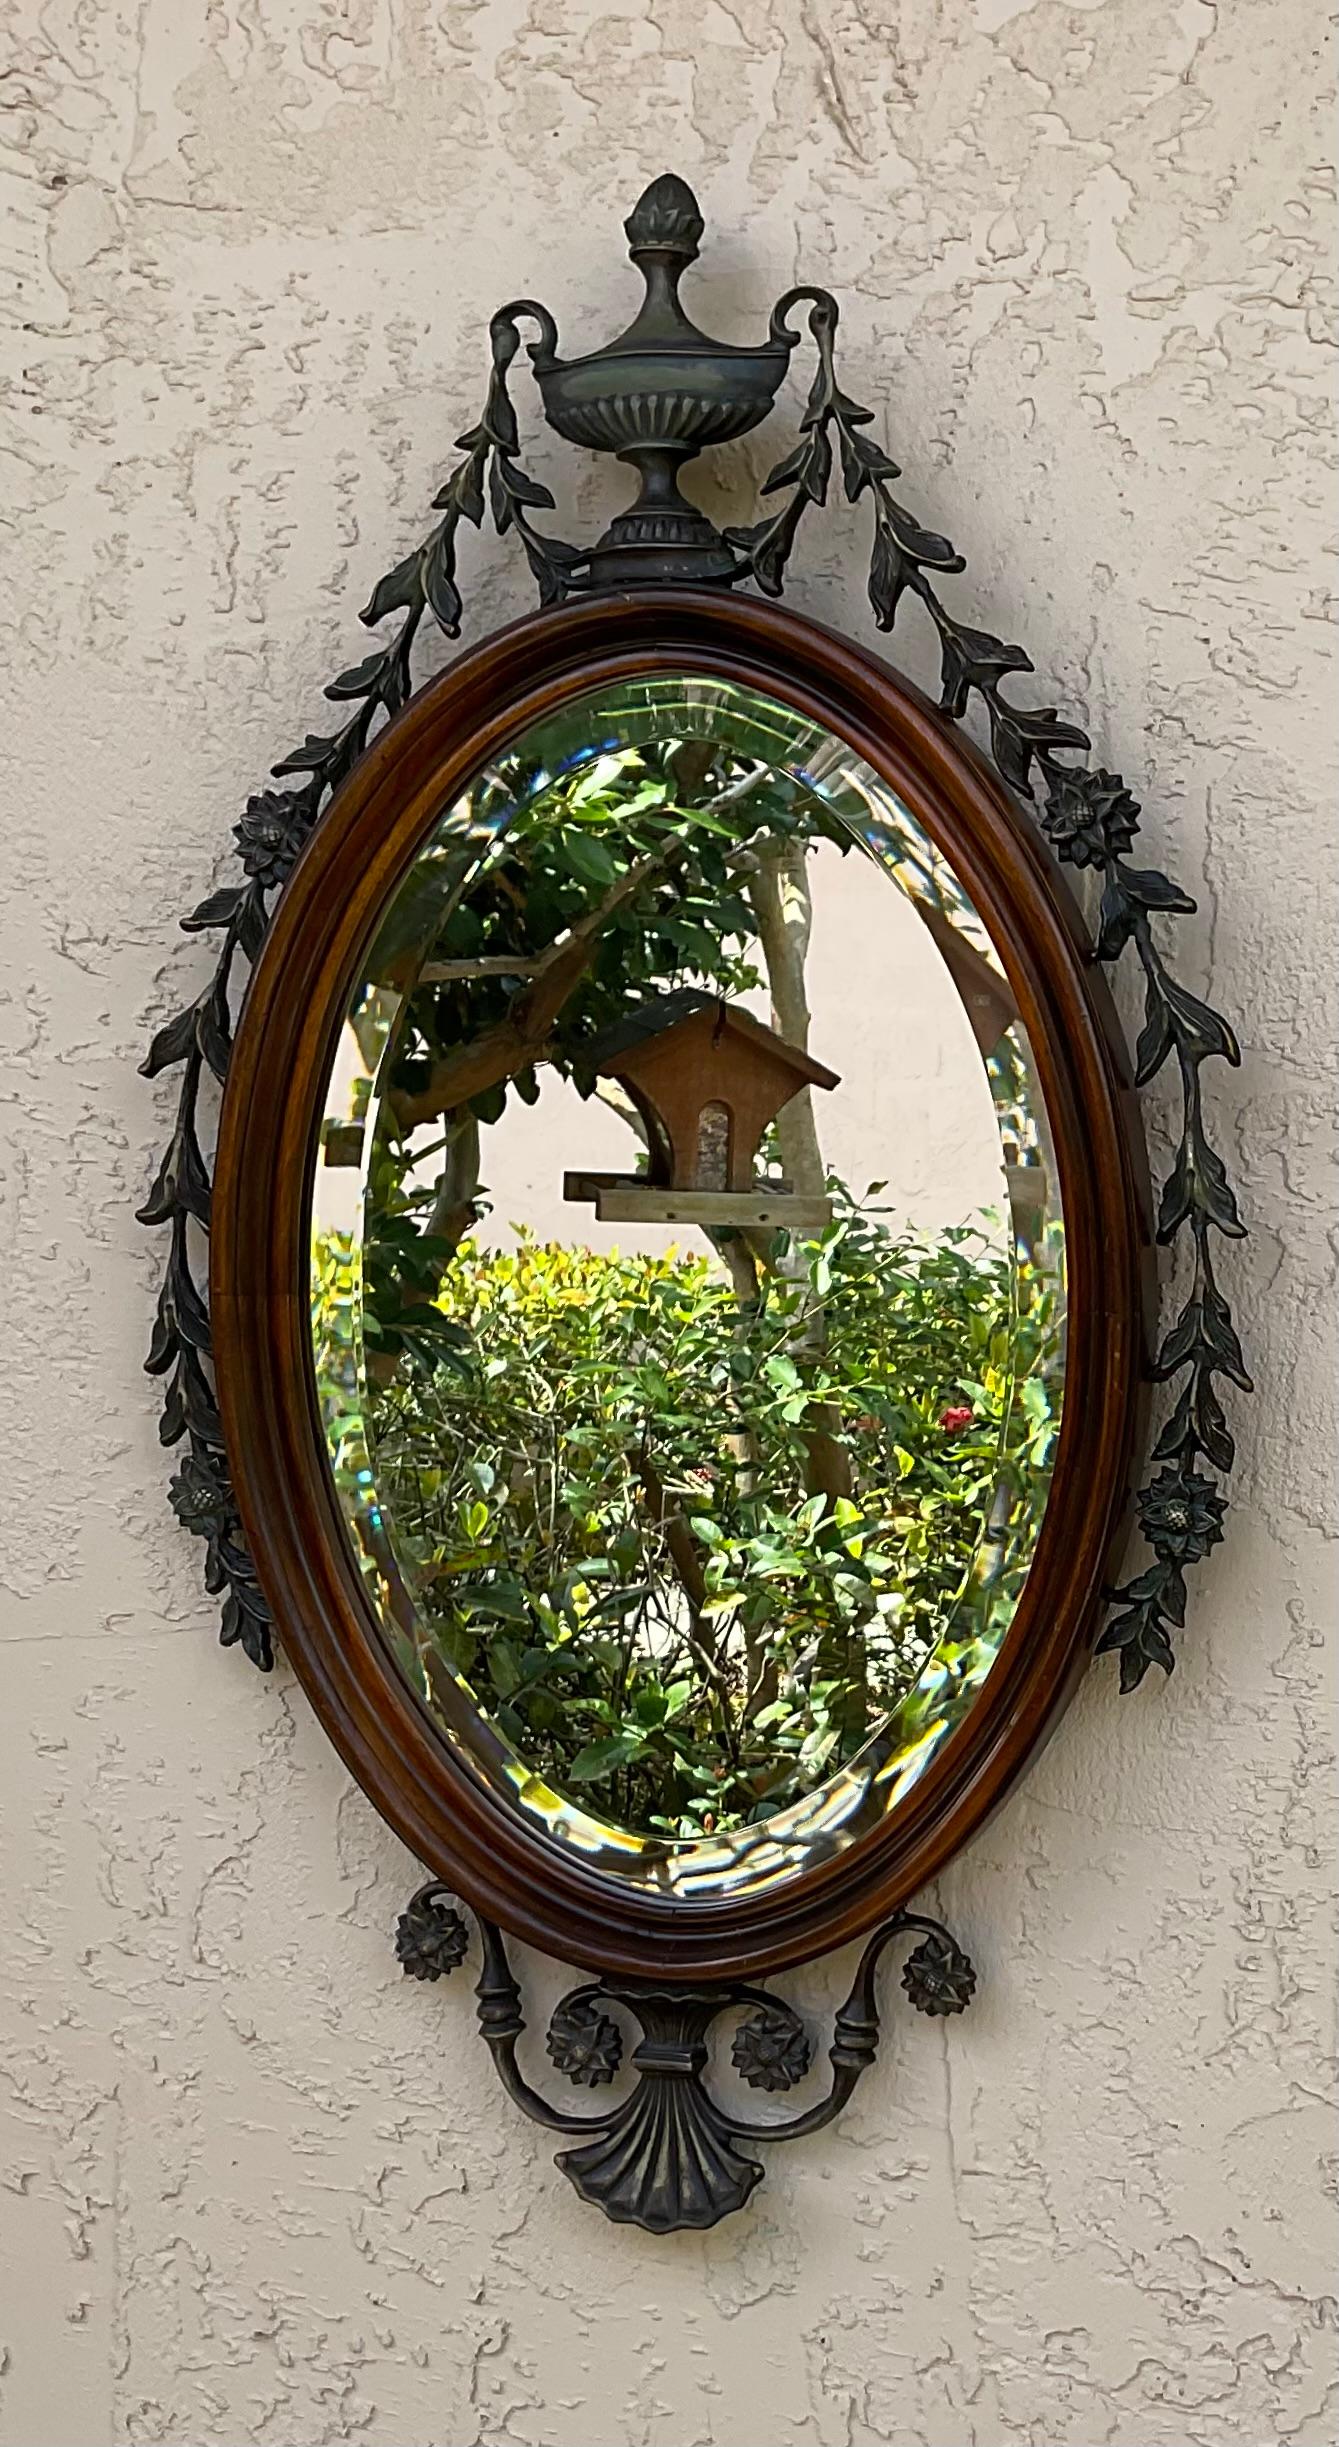 Elegant miroir mural en bois sculpté à la main, avec décoration de fleurs et de vignes en bronze, miroir épais et biseauté. 
Un complément idéal à tous les murs de la maison 
Taille réelle du verre 